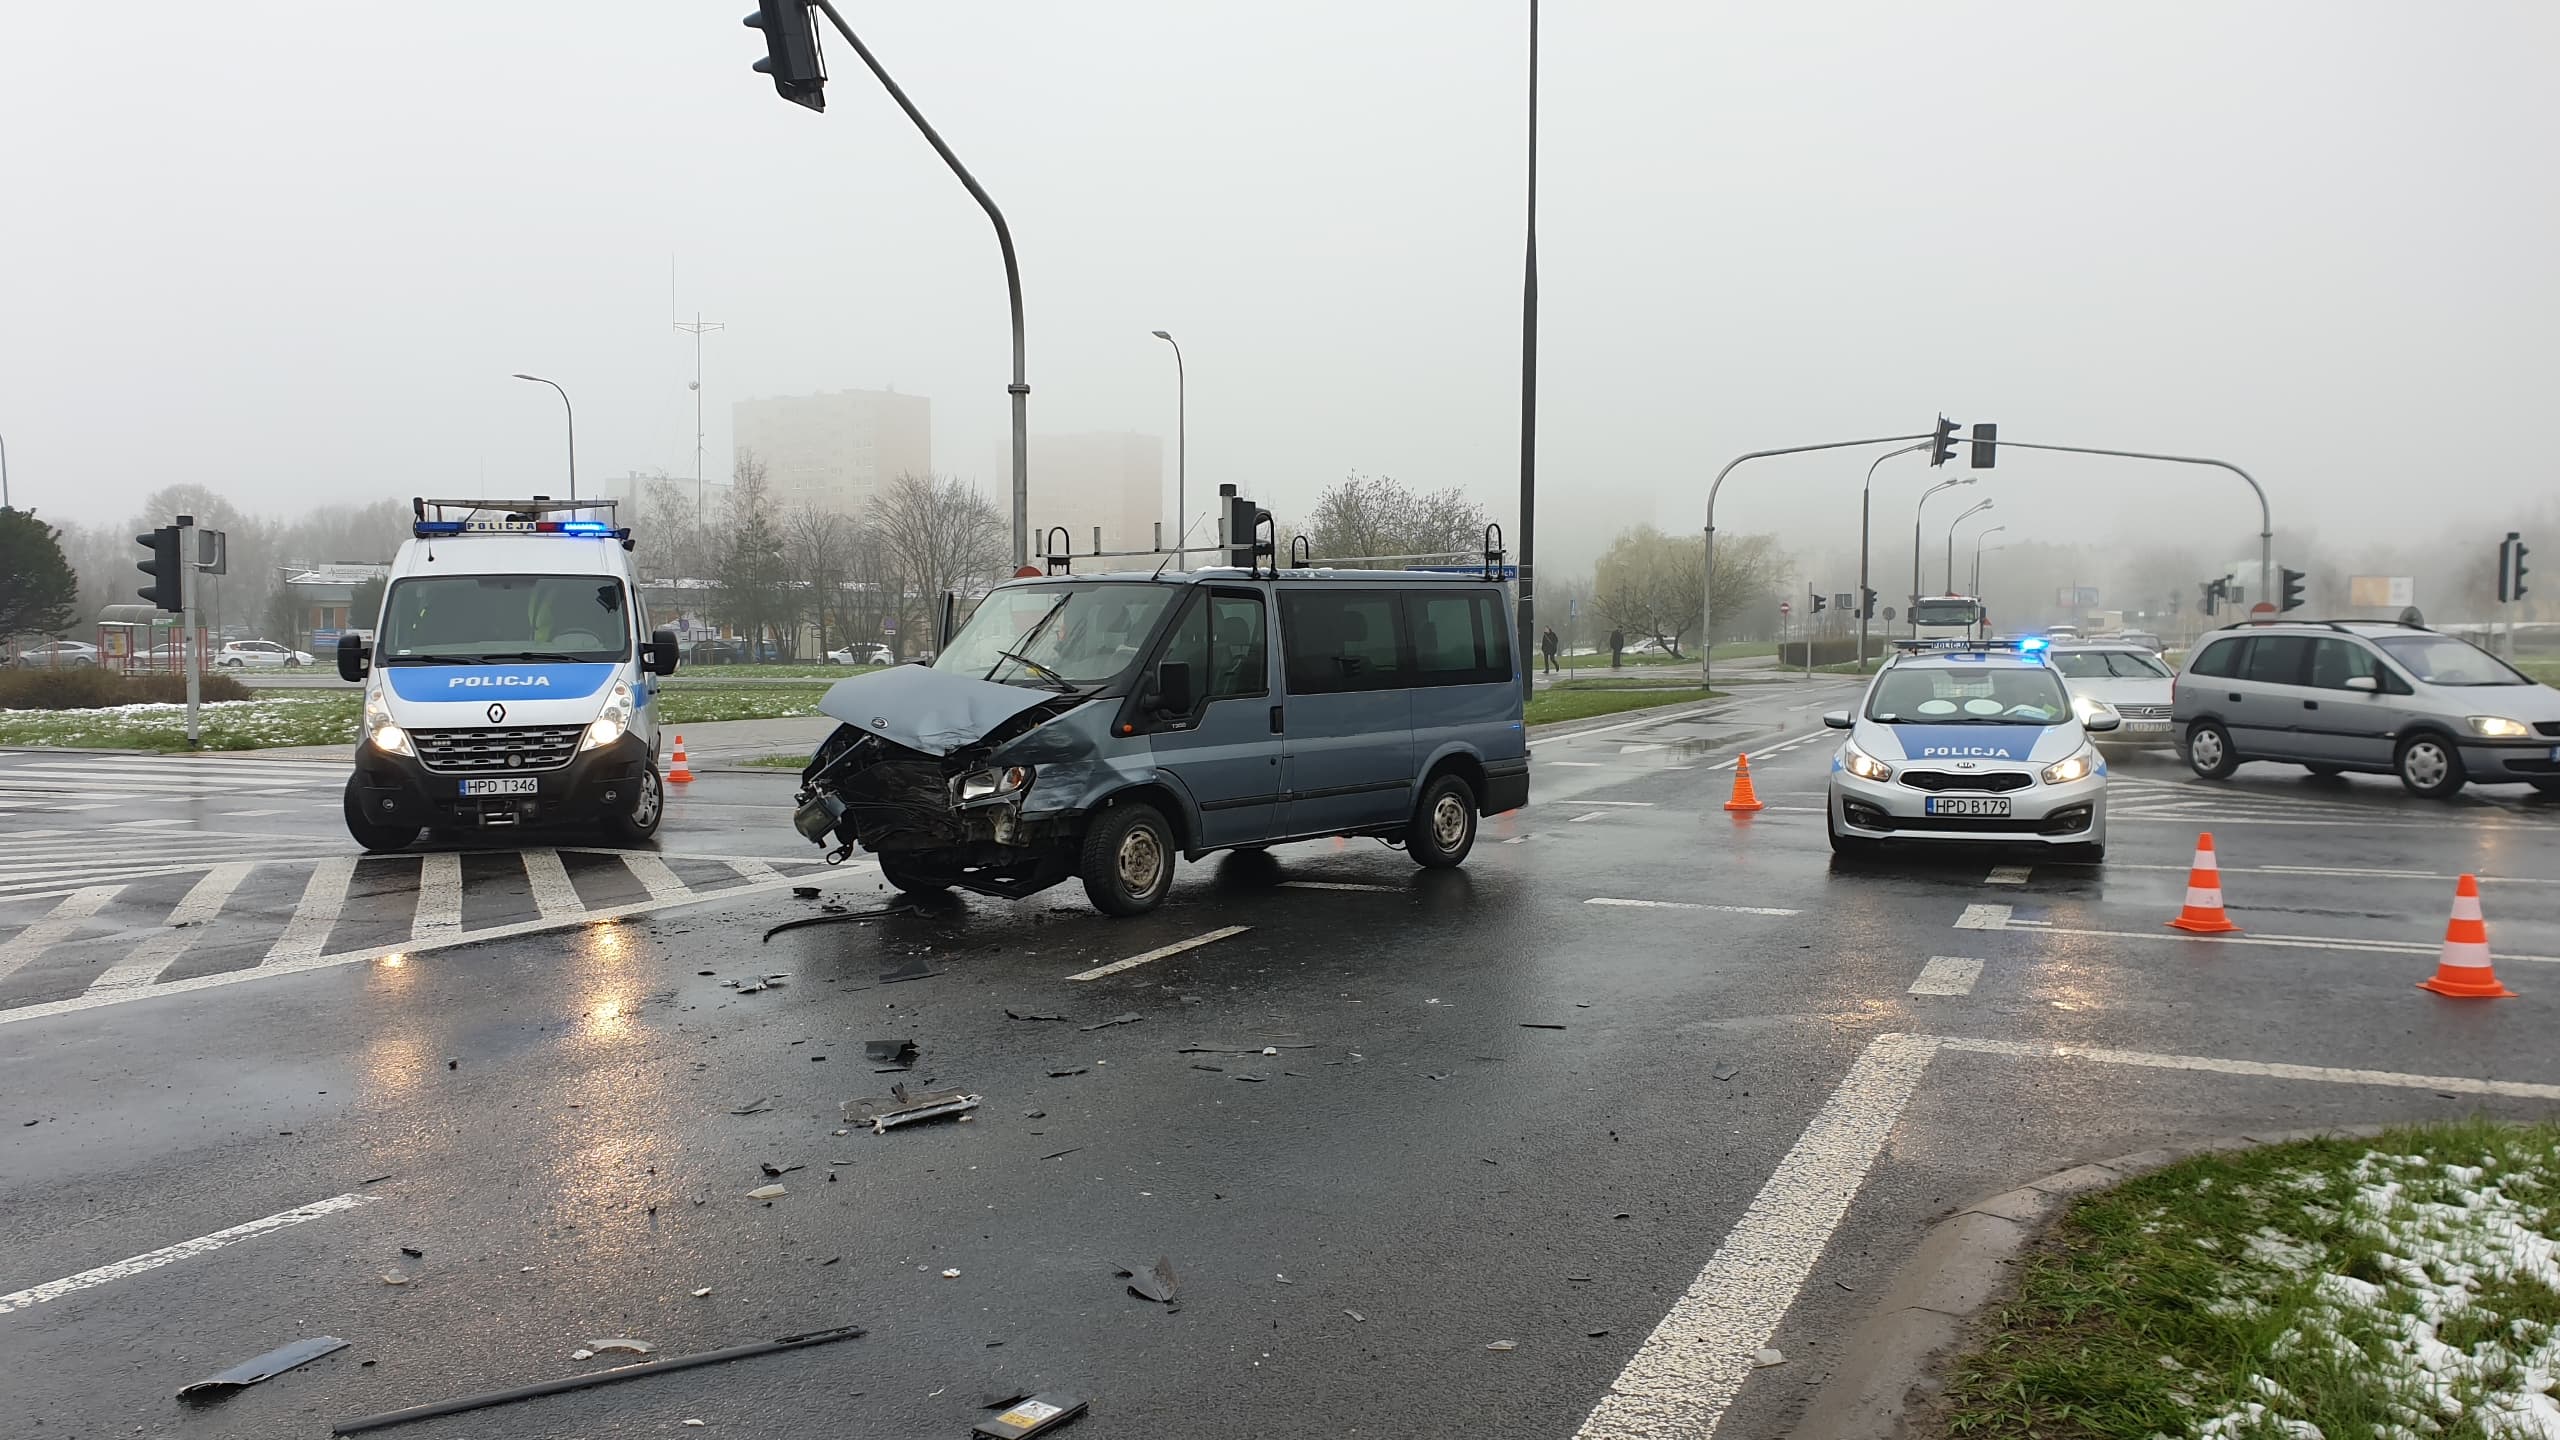 Wypadek na skrzyżowaniu w Lublinie. Dwie osoby poszkodowane, są utrudnienia w ruchu (zdjęcia)